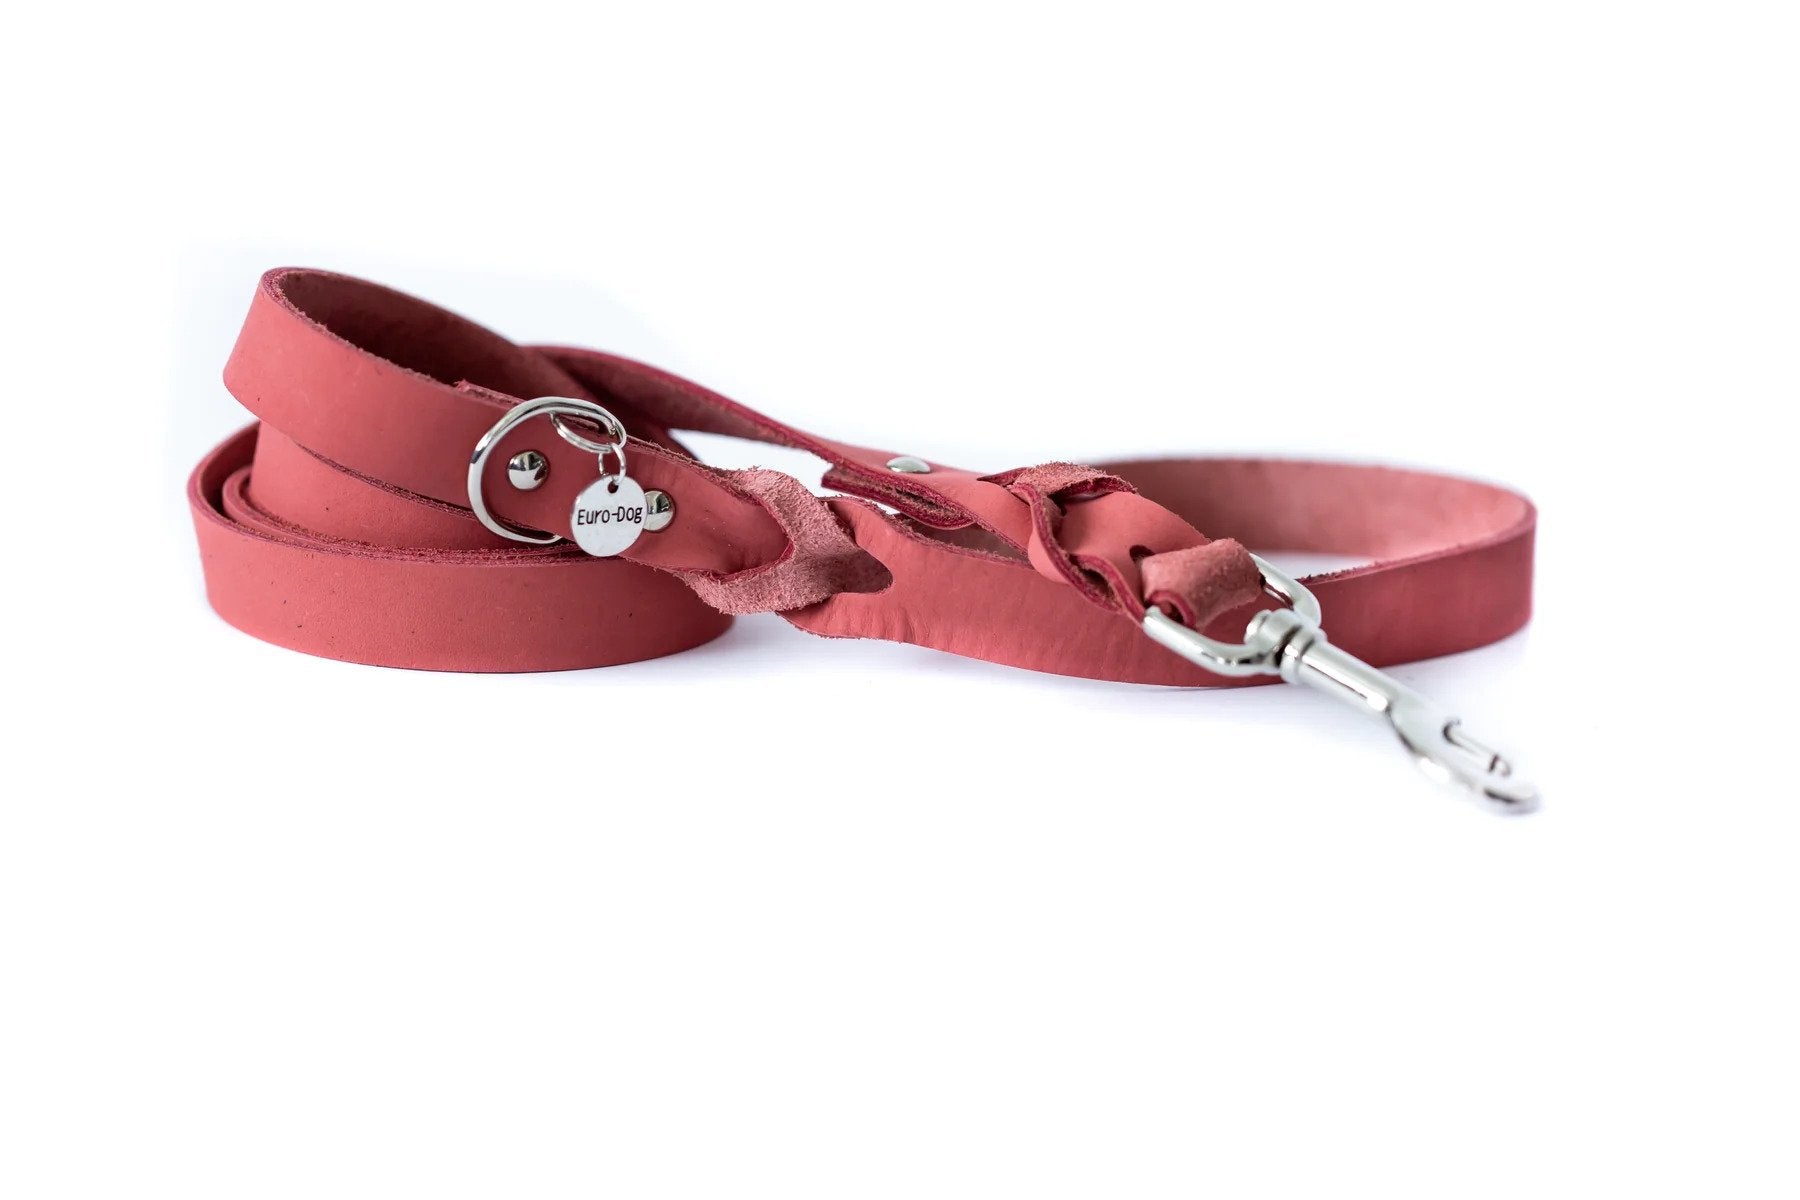 Eurodog Collars Elegant Style Soft Leather Braided Dog Leash